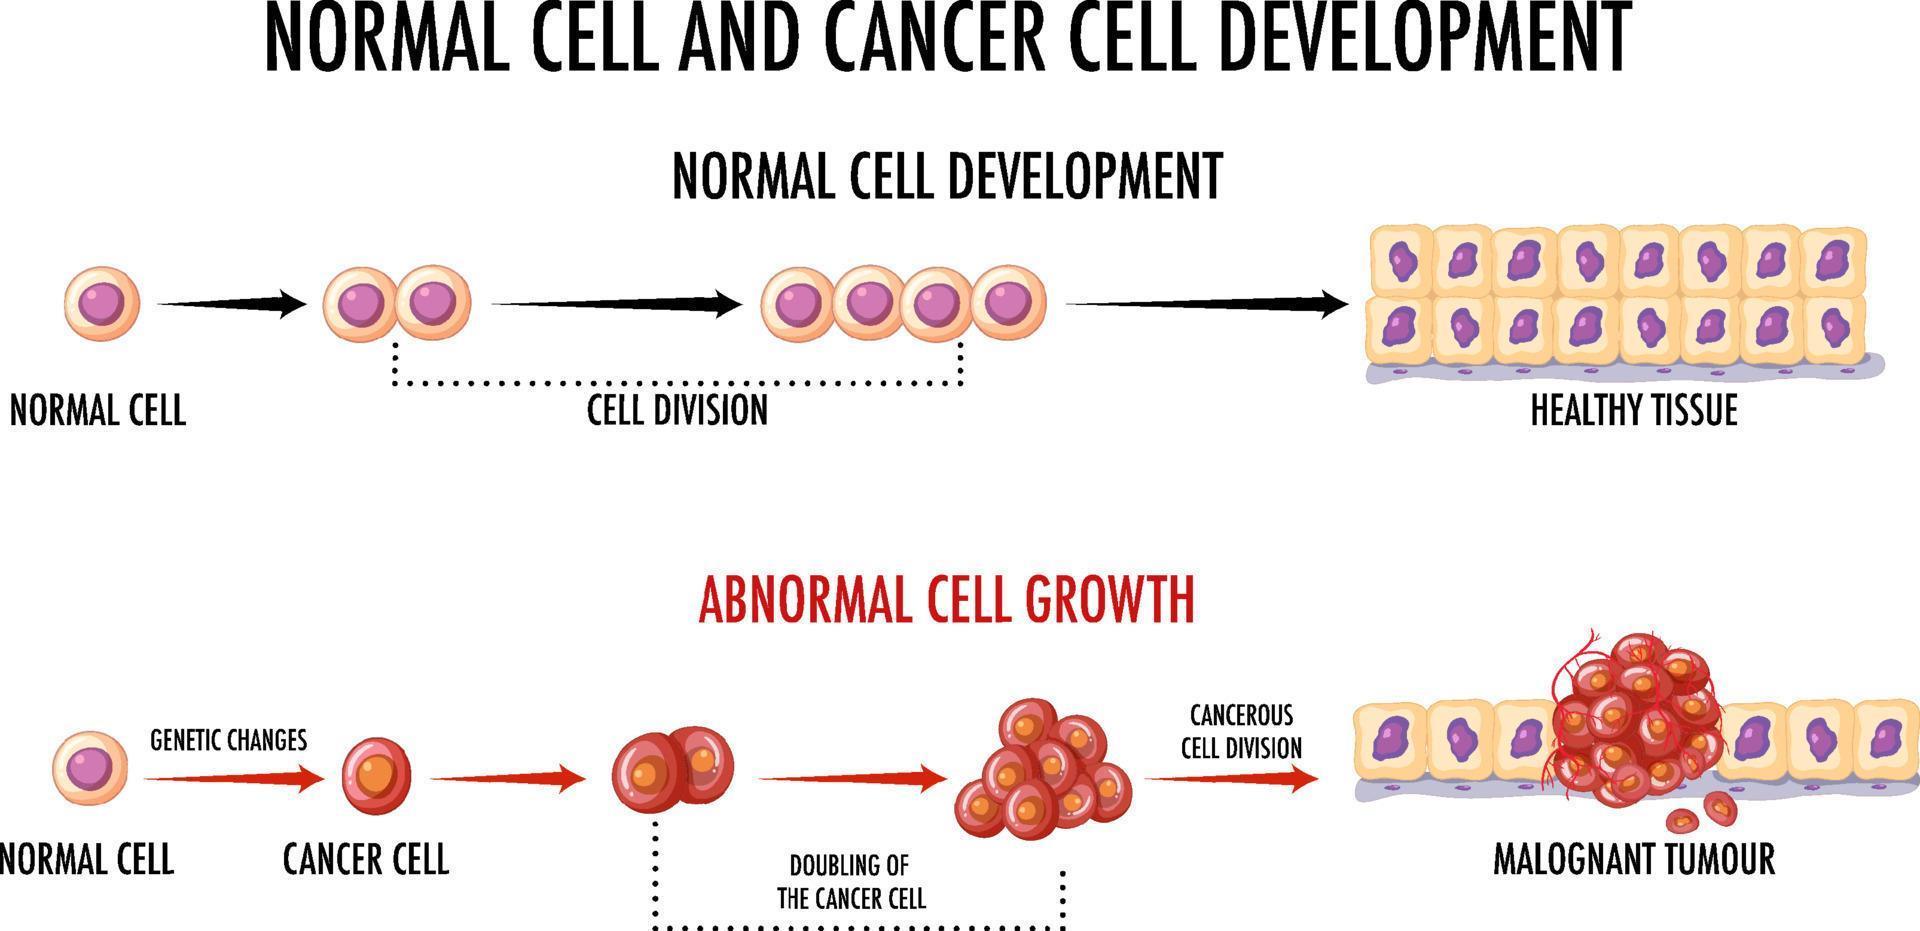 Diagramm, das normale und Krebszellen zeigt vektor